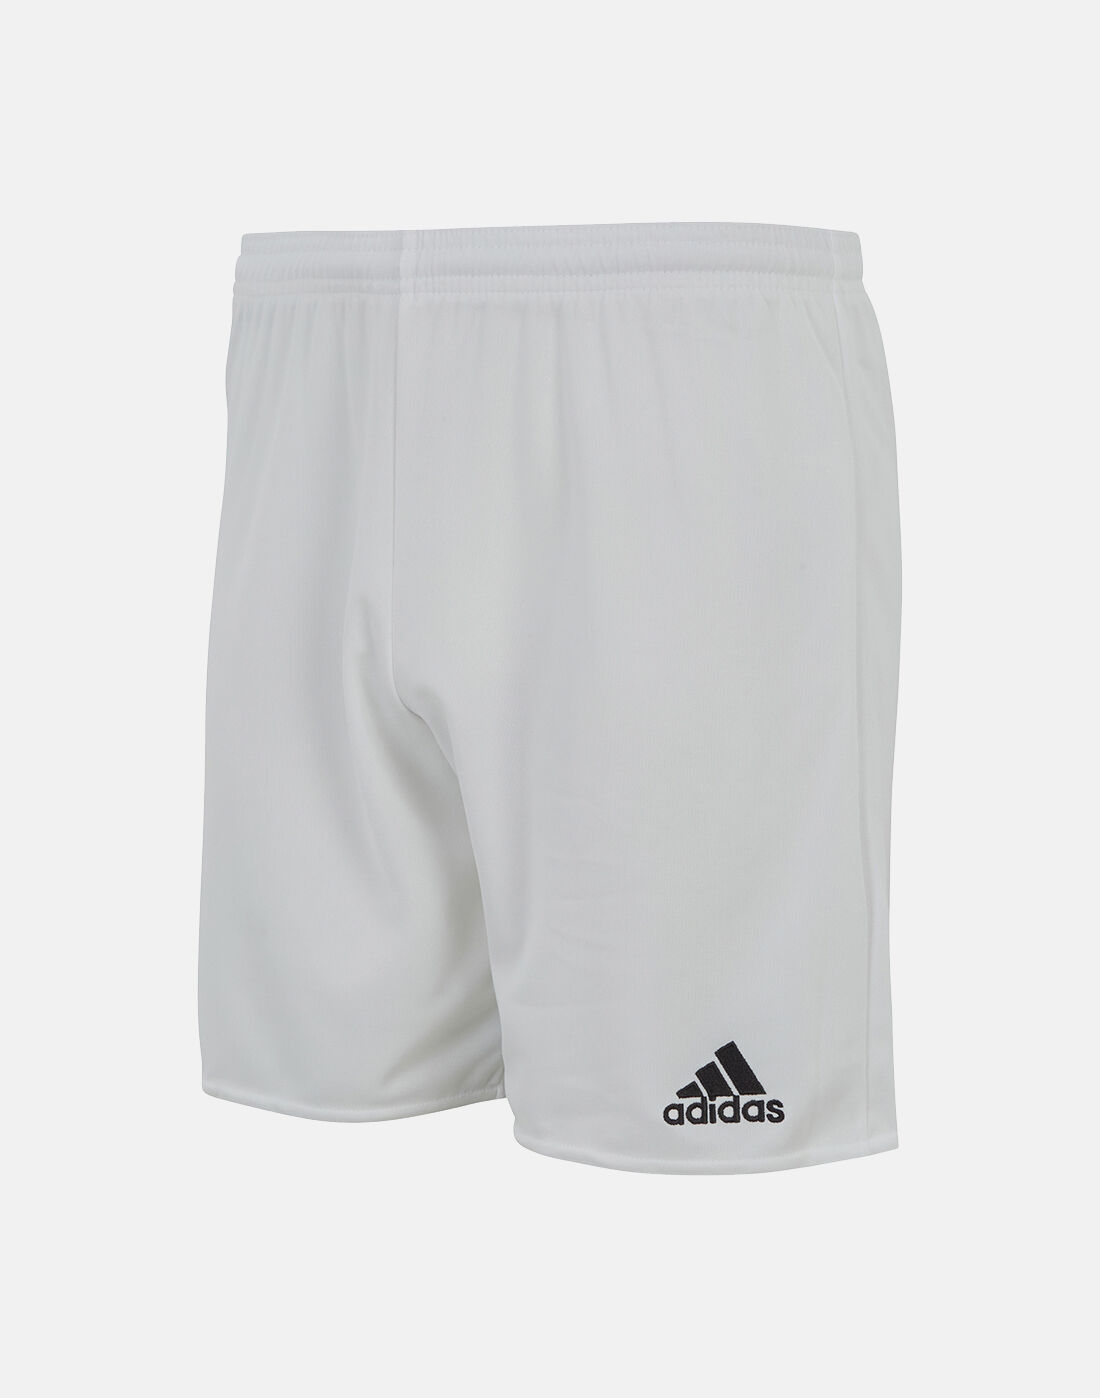 mens adidas football shorts